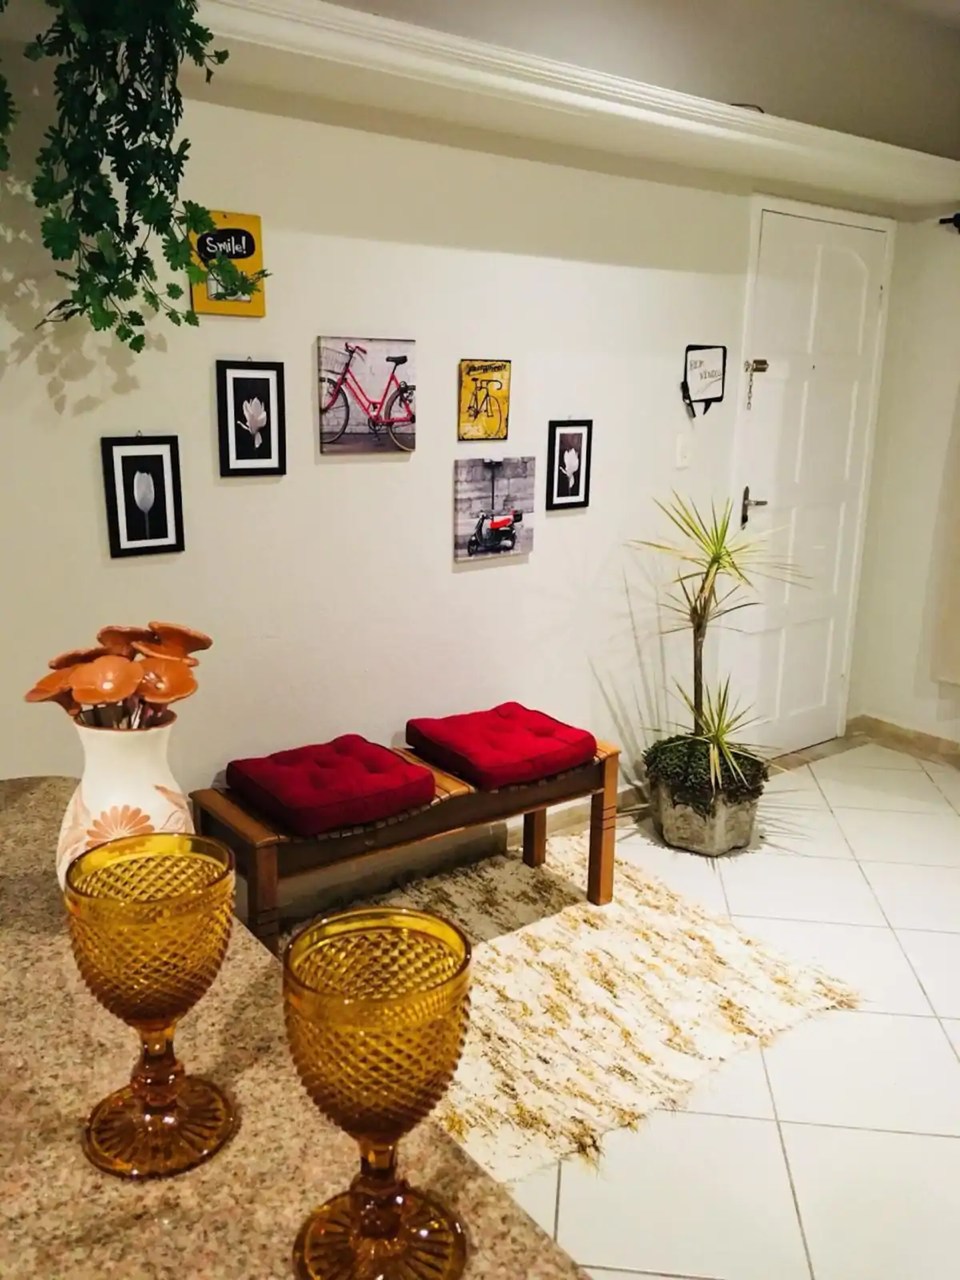 Airbnb Ouro Preto MG - Conheça 7 Opções  do Econômico ao Sofisticado